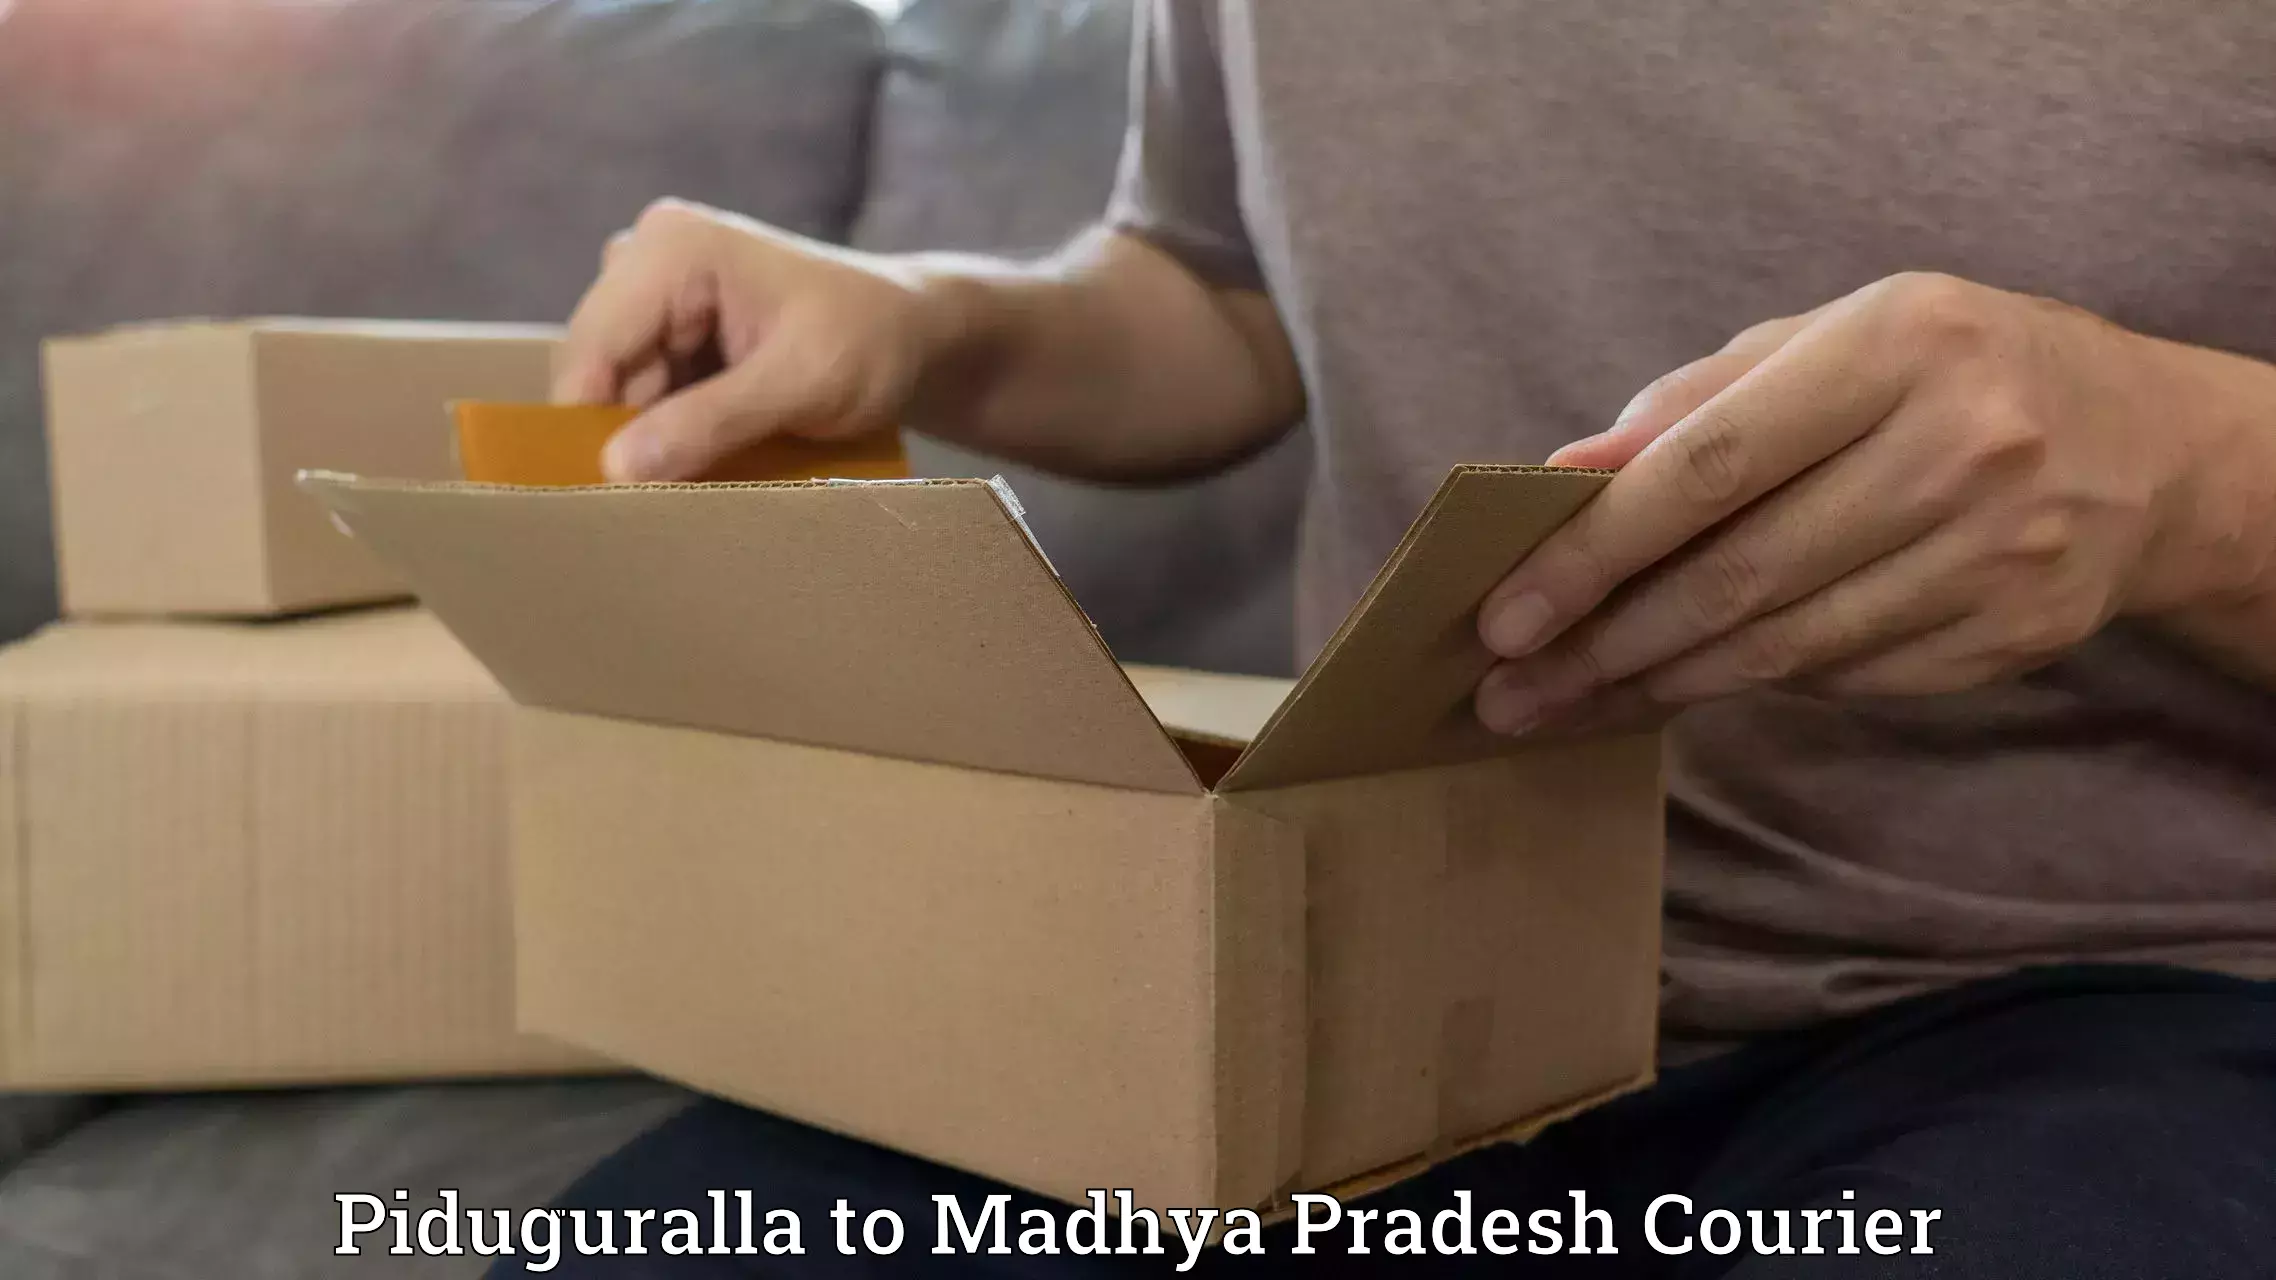 Overnight delivery services Piduguralla to Raghogarh